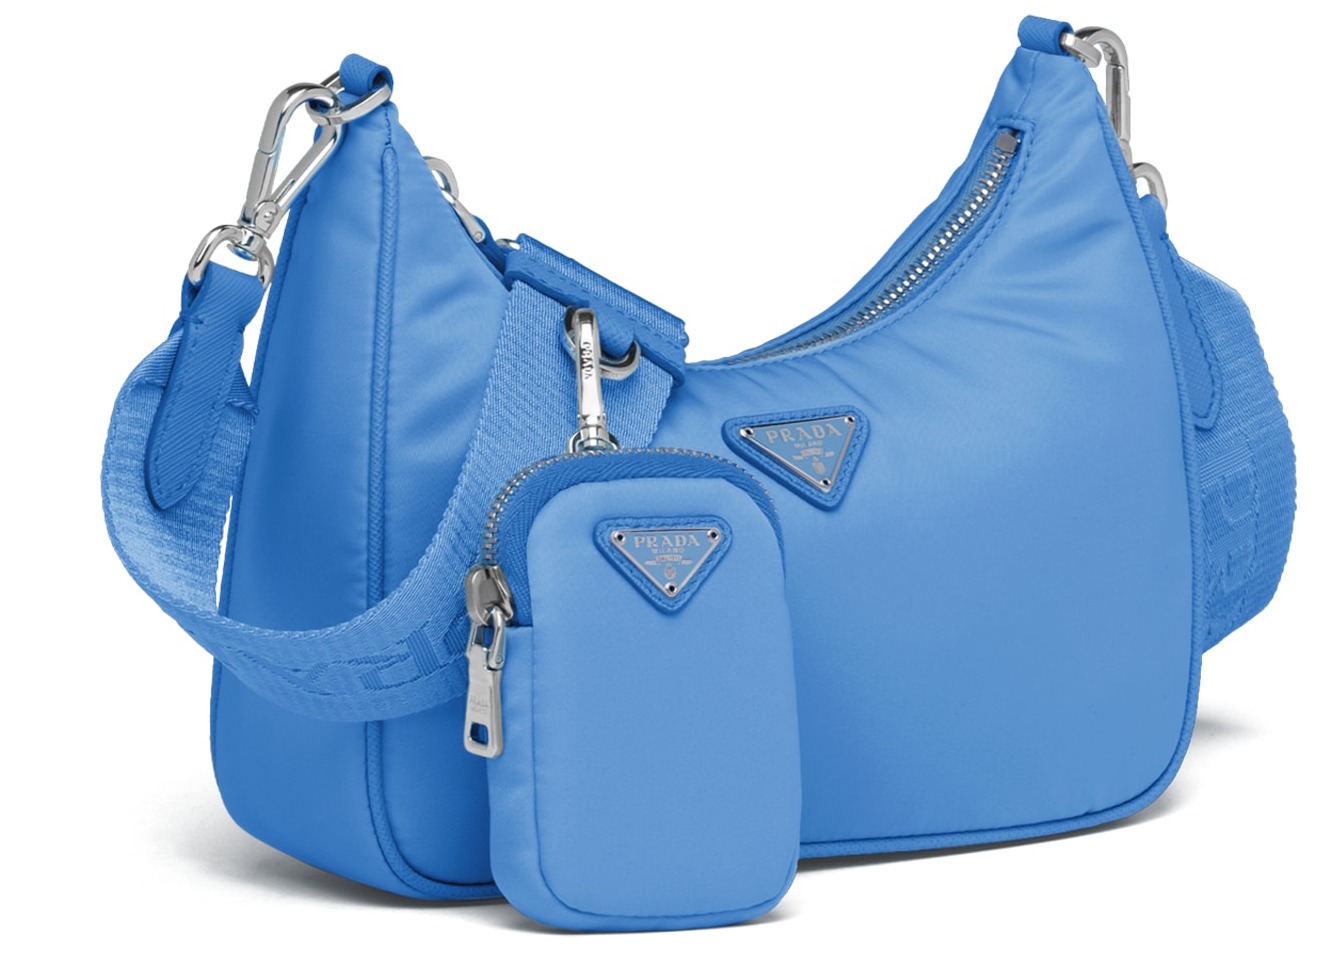 blue prada bag